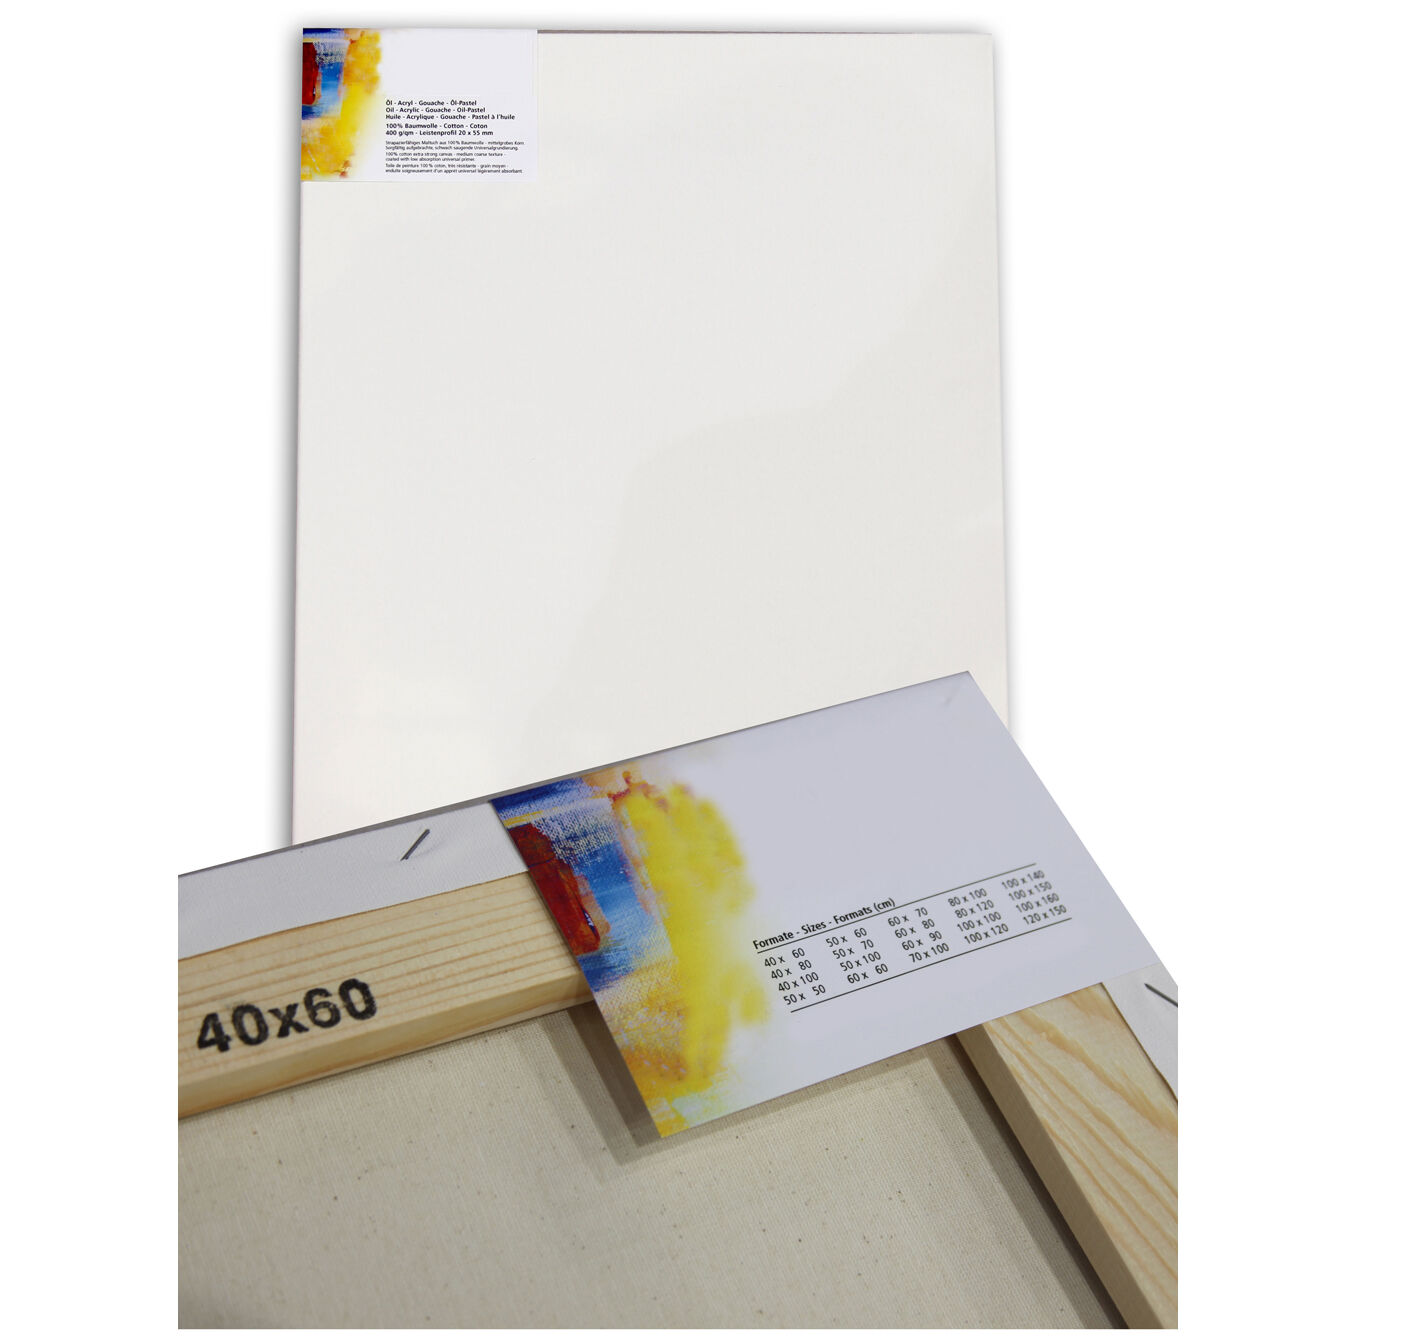 NEU Cotton 400 Premium-Keilrahmen Professionell 20mm Leistenstärke, 30 x 30 cm - 2 Stück Bild 2